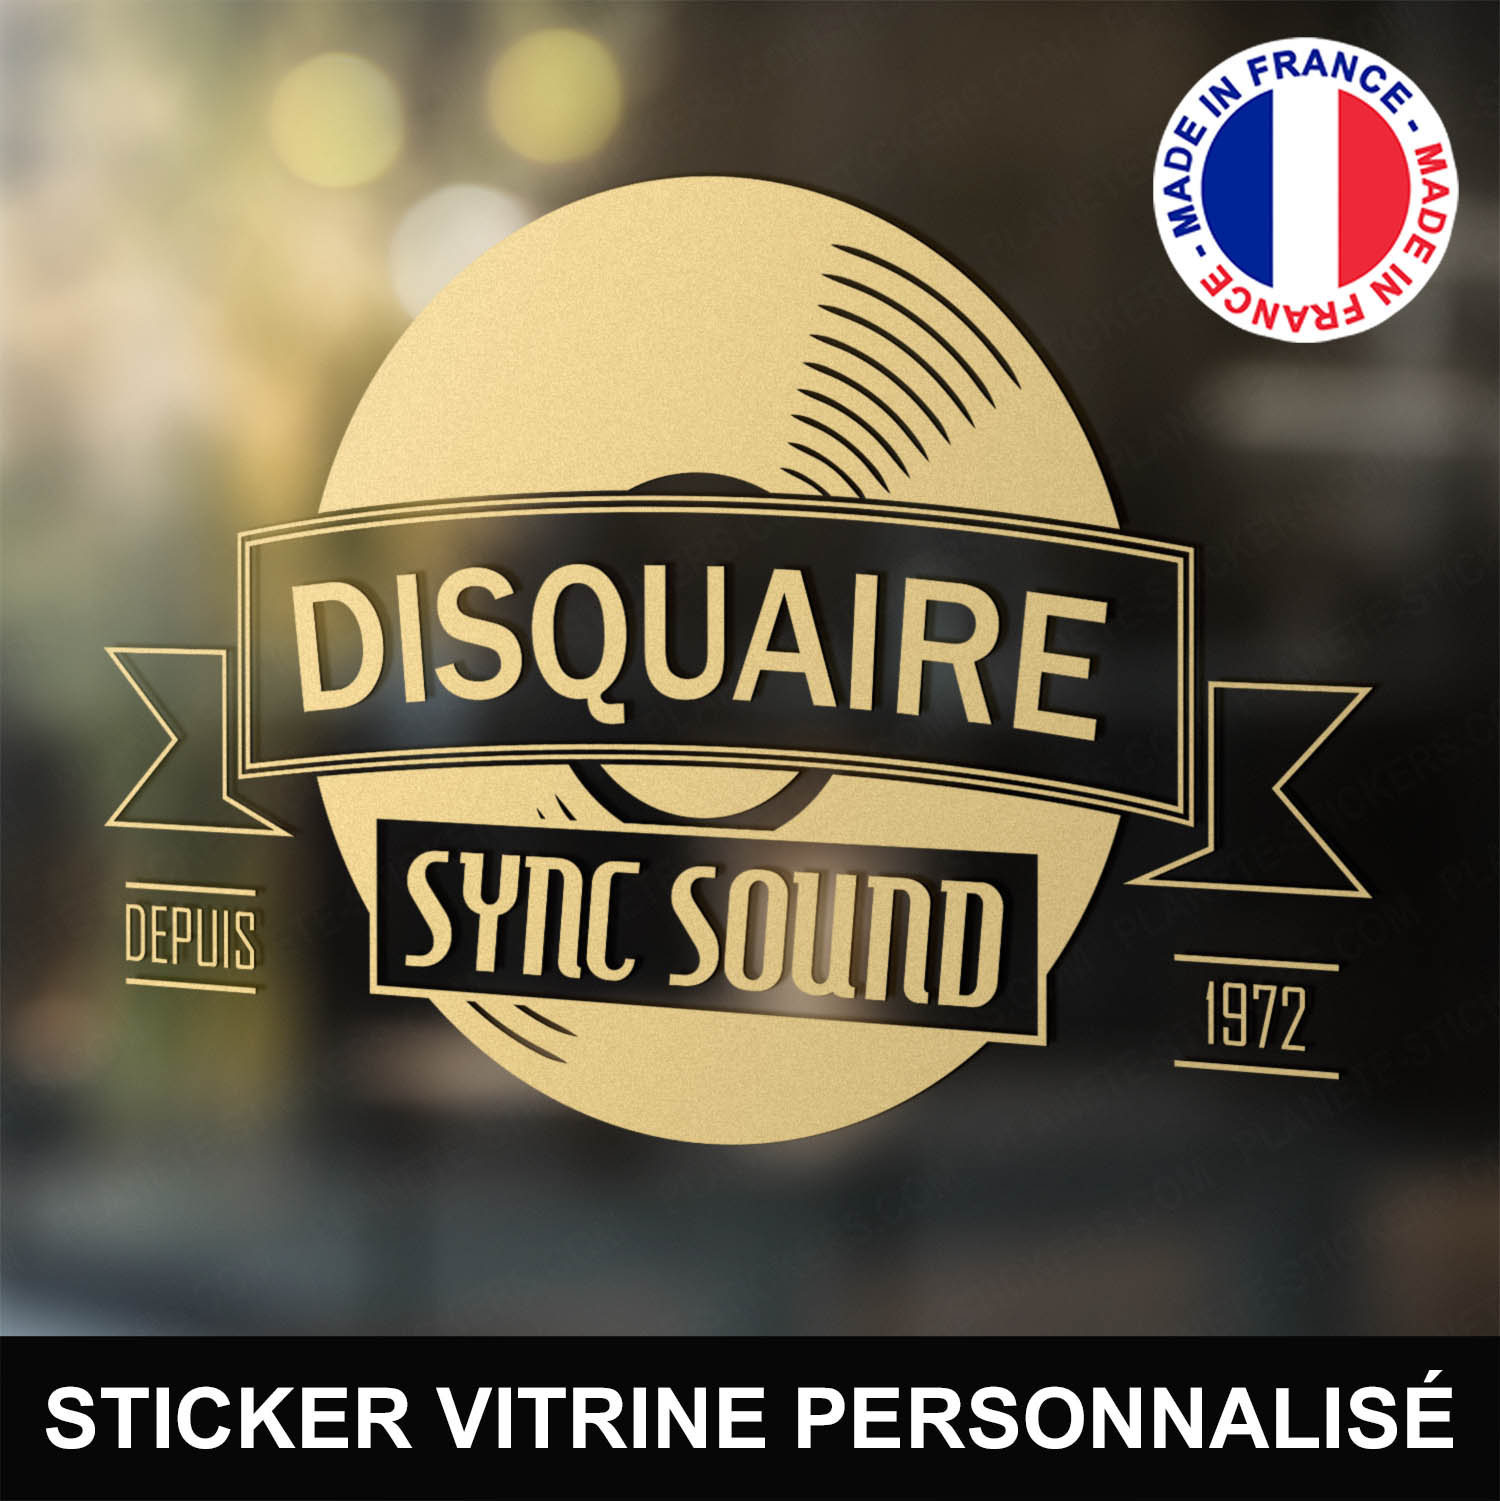 ref1disquairevitrine-stickers-disquaire-vitrine-sticker-personnalisé-autocollant-boutique-vinyle-disques-musique-pro-professionnel